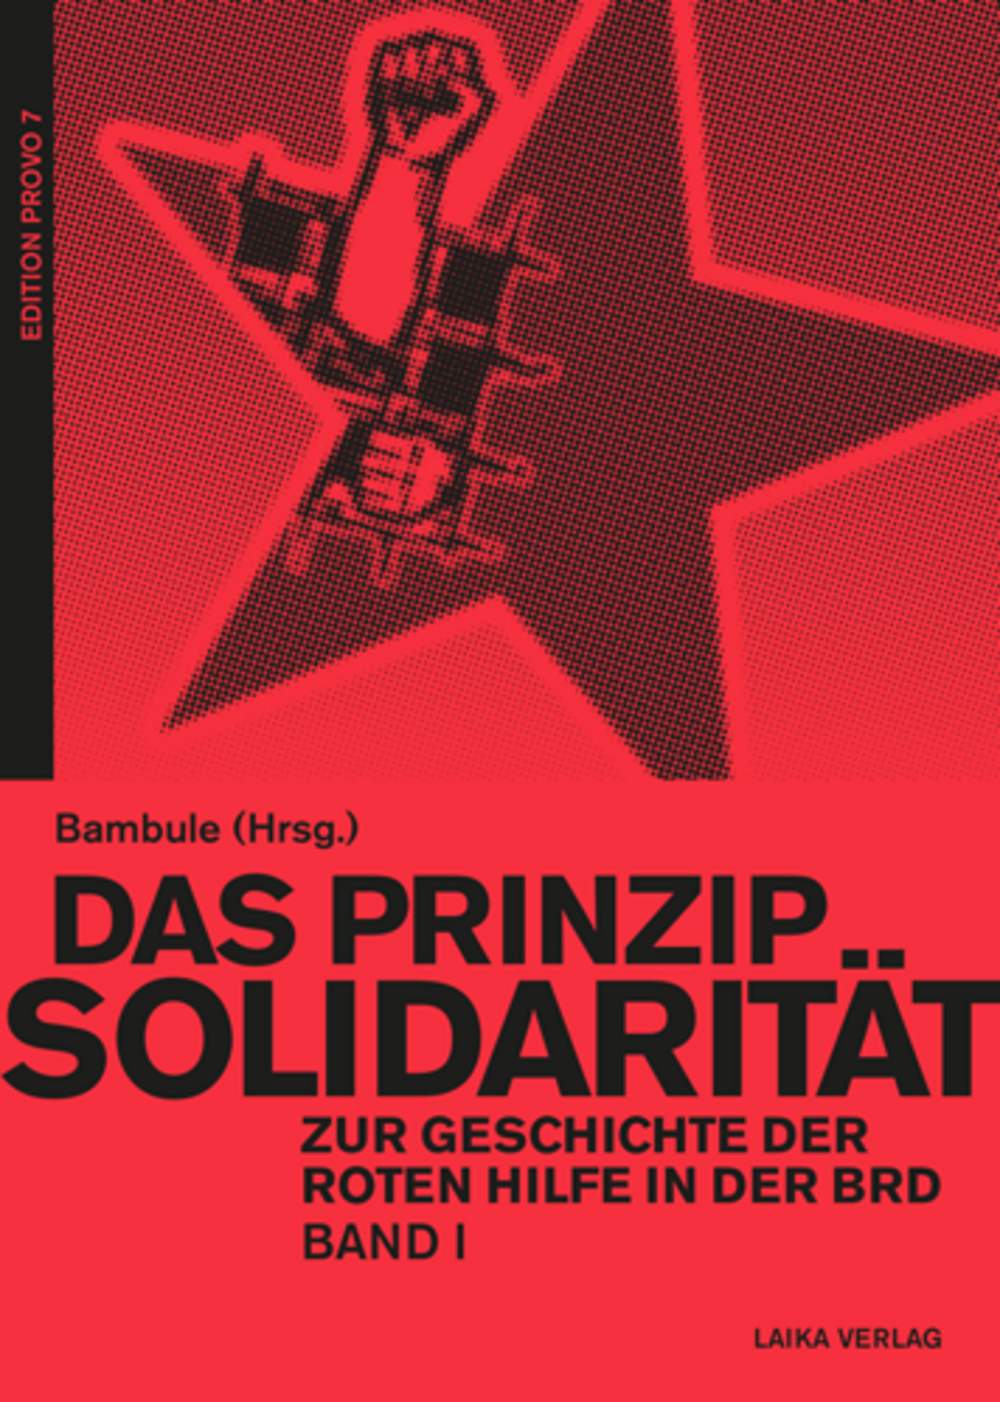 prinzip-solidaritaet-1